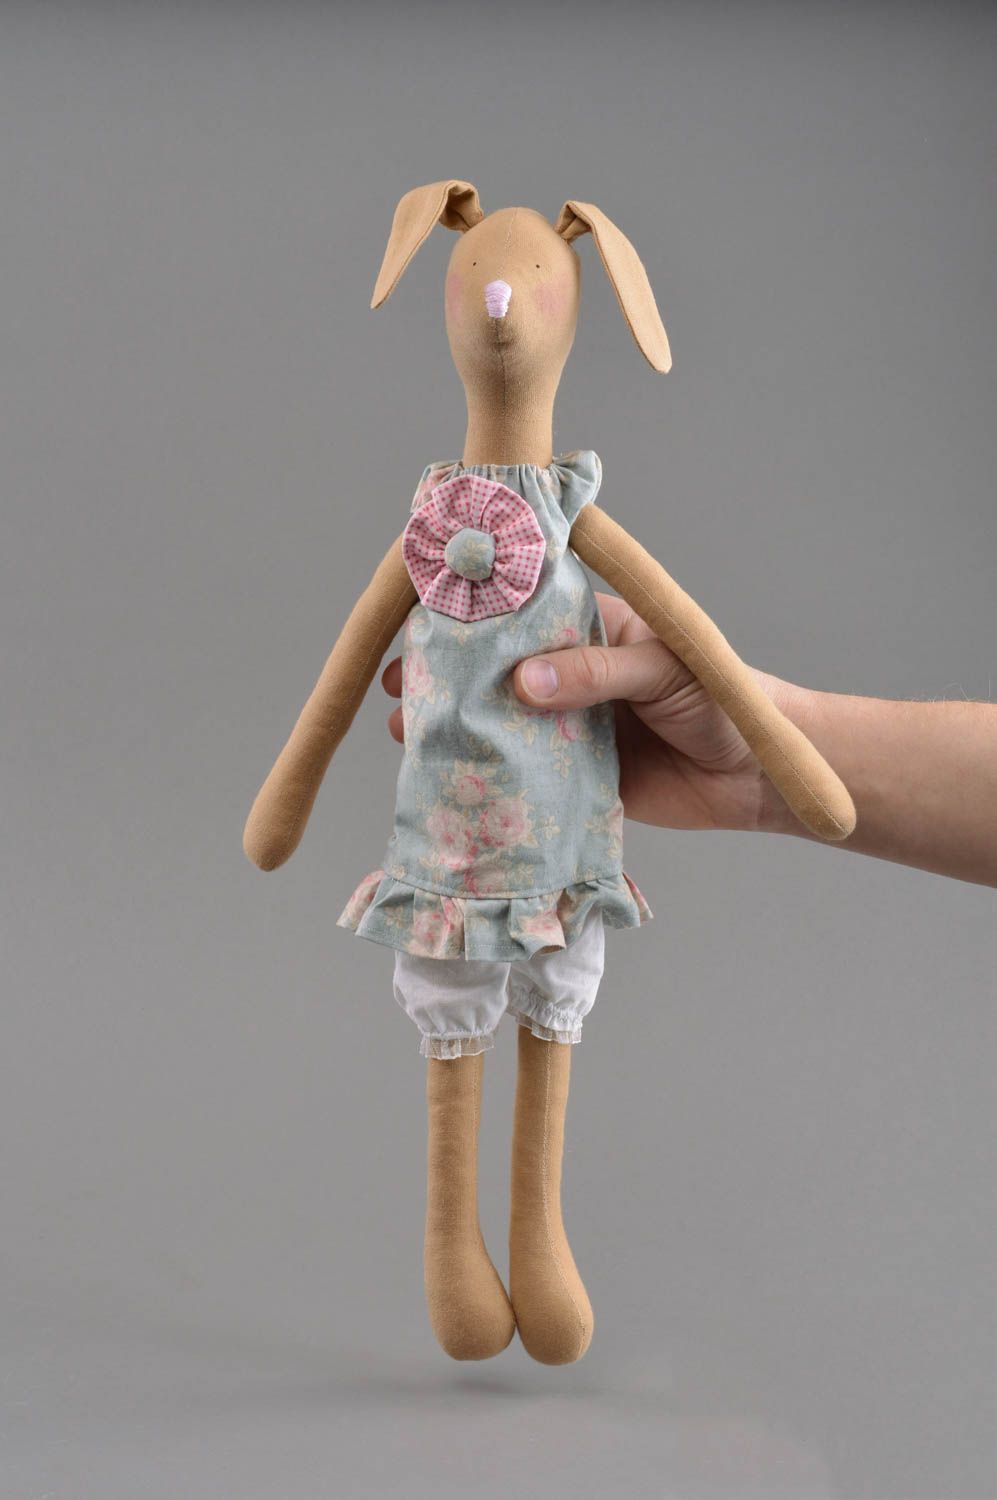 Textil Kuscheltier Hase im Kleid weich schön handmade Spielzeug für Kinder foto 4